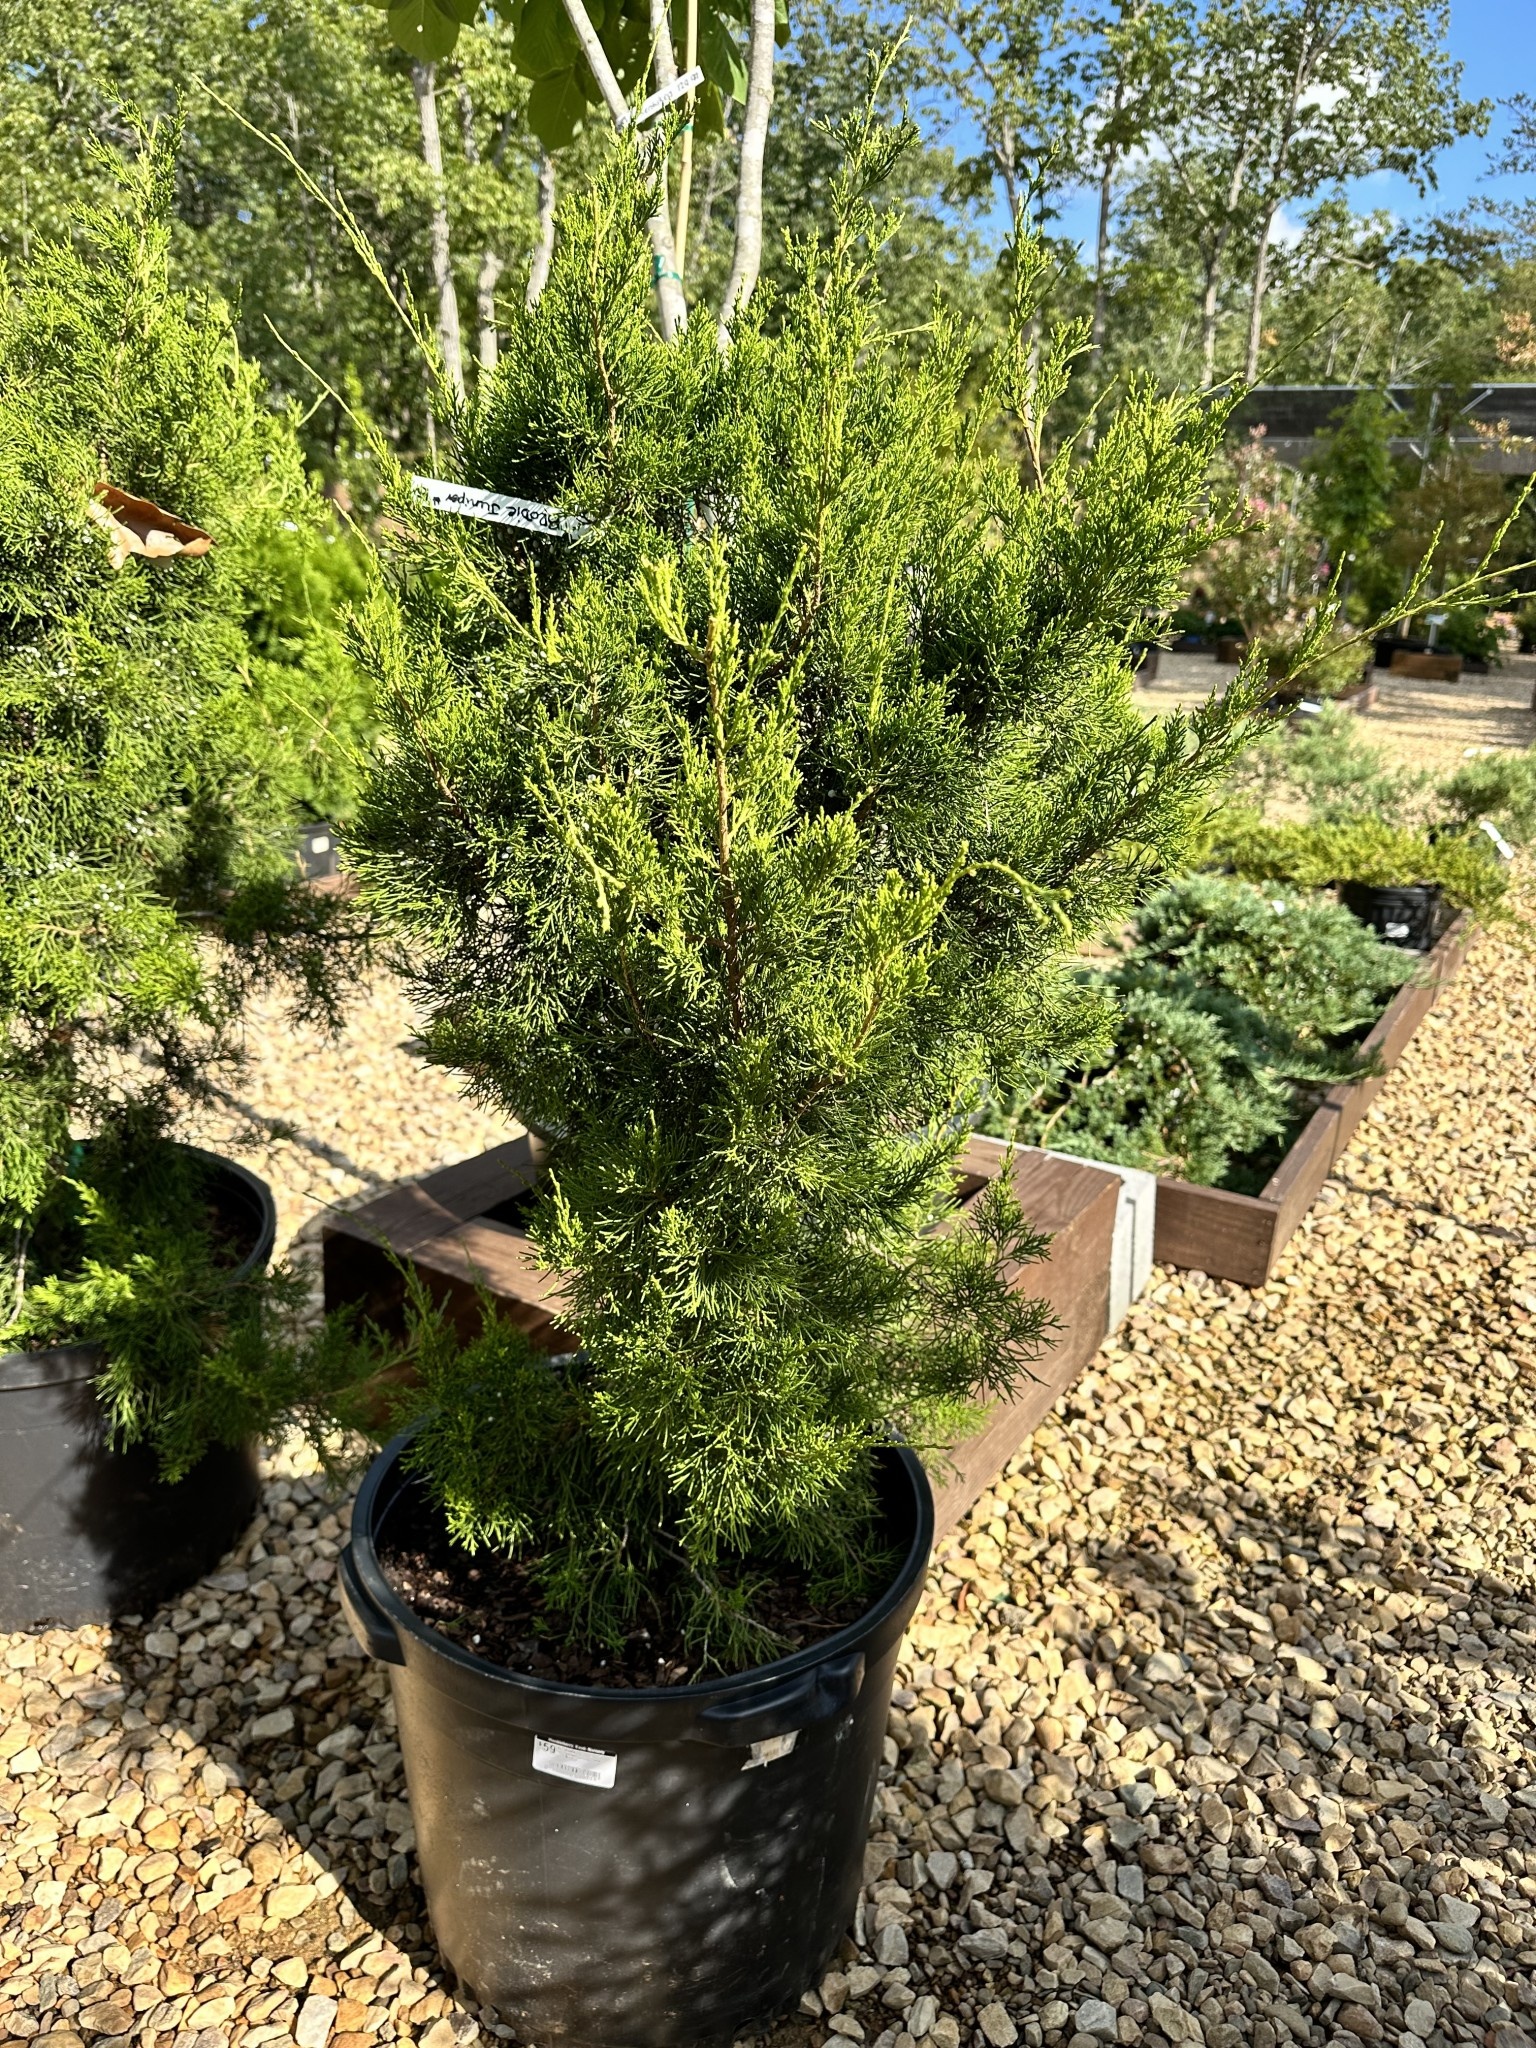 Brodie Juniper #15 -- Juniperus virginiana 'Brodie'